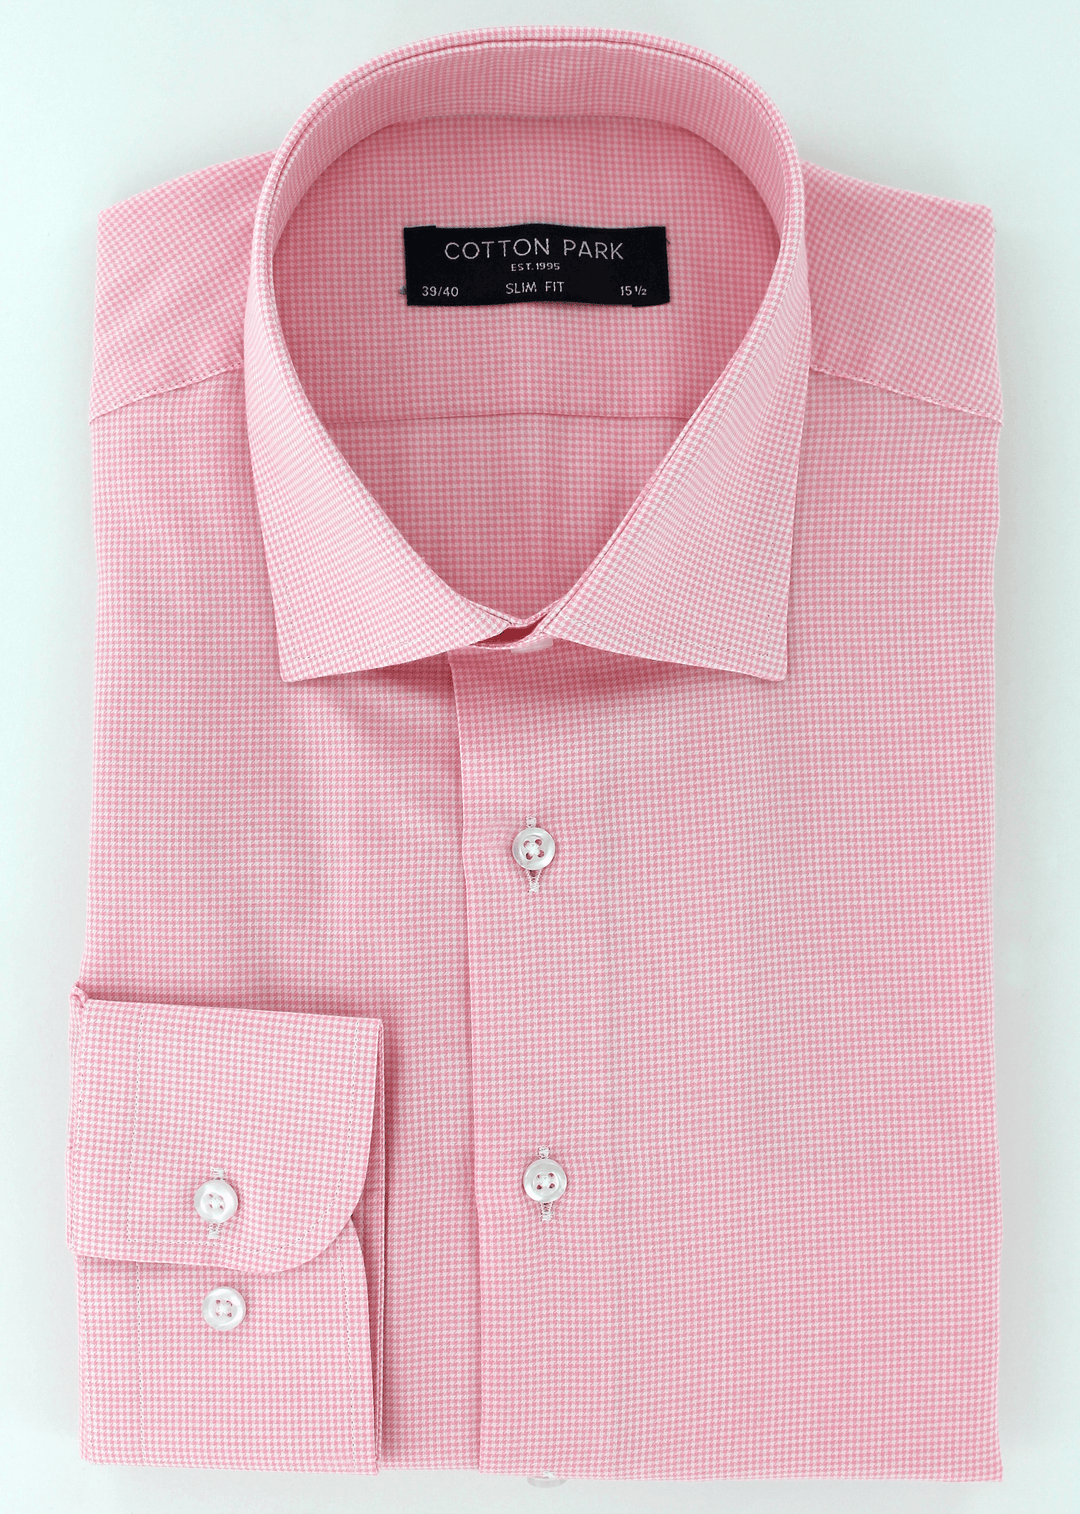 Chemise chic pour homme en coupe cintrée rose à motifs pied-de-poule | Cotton Park